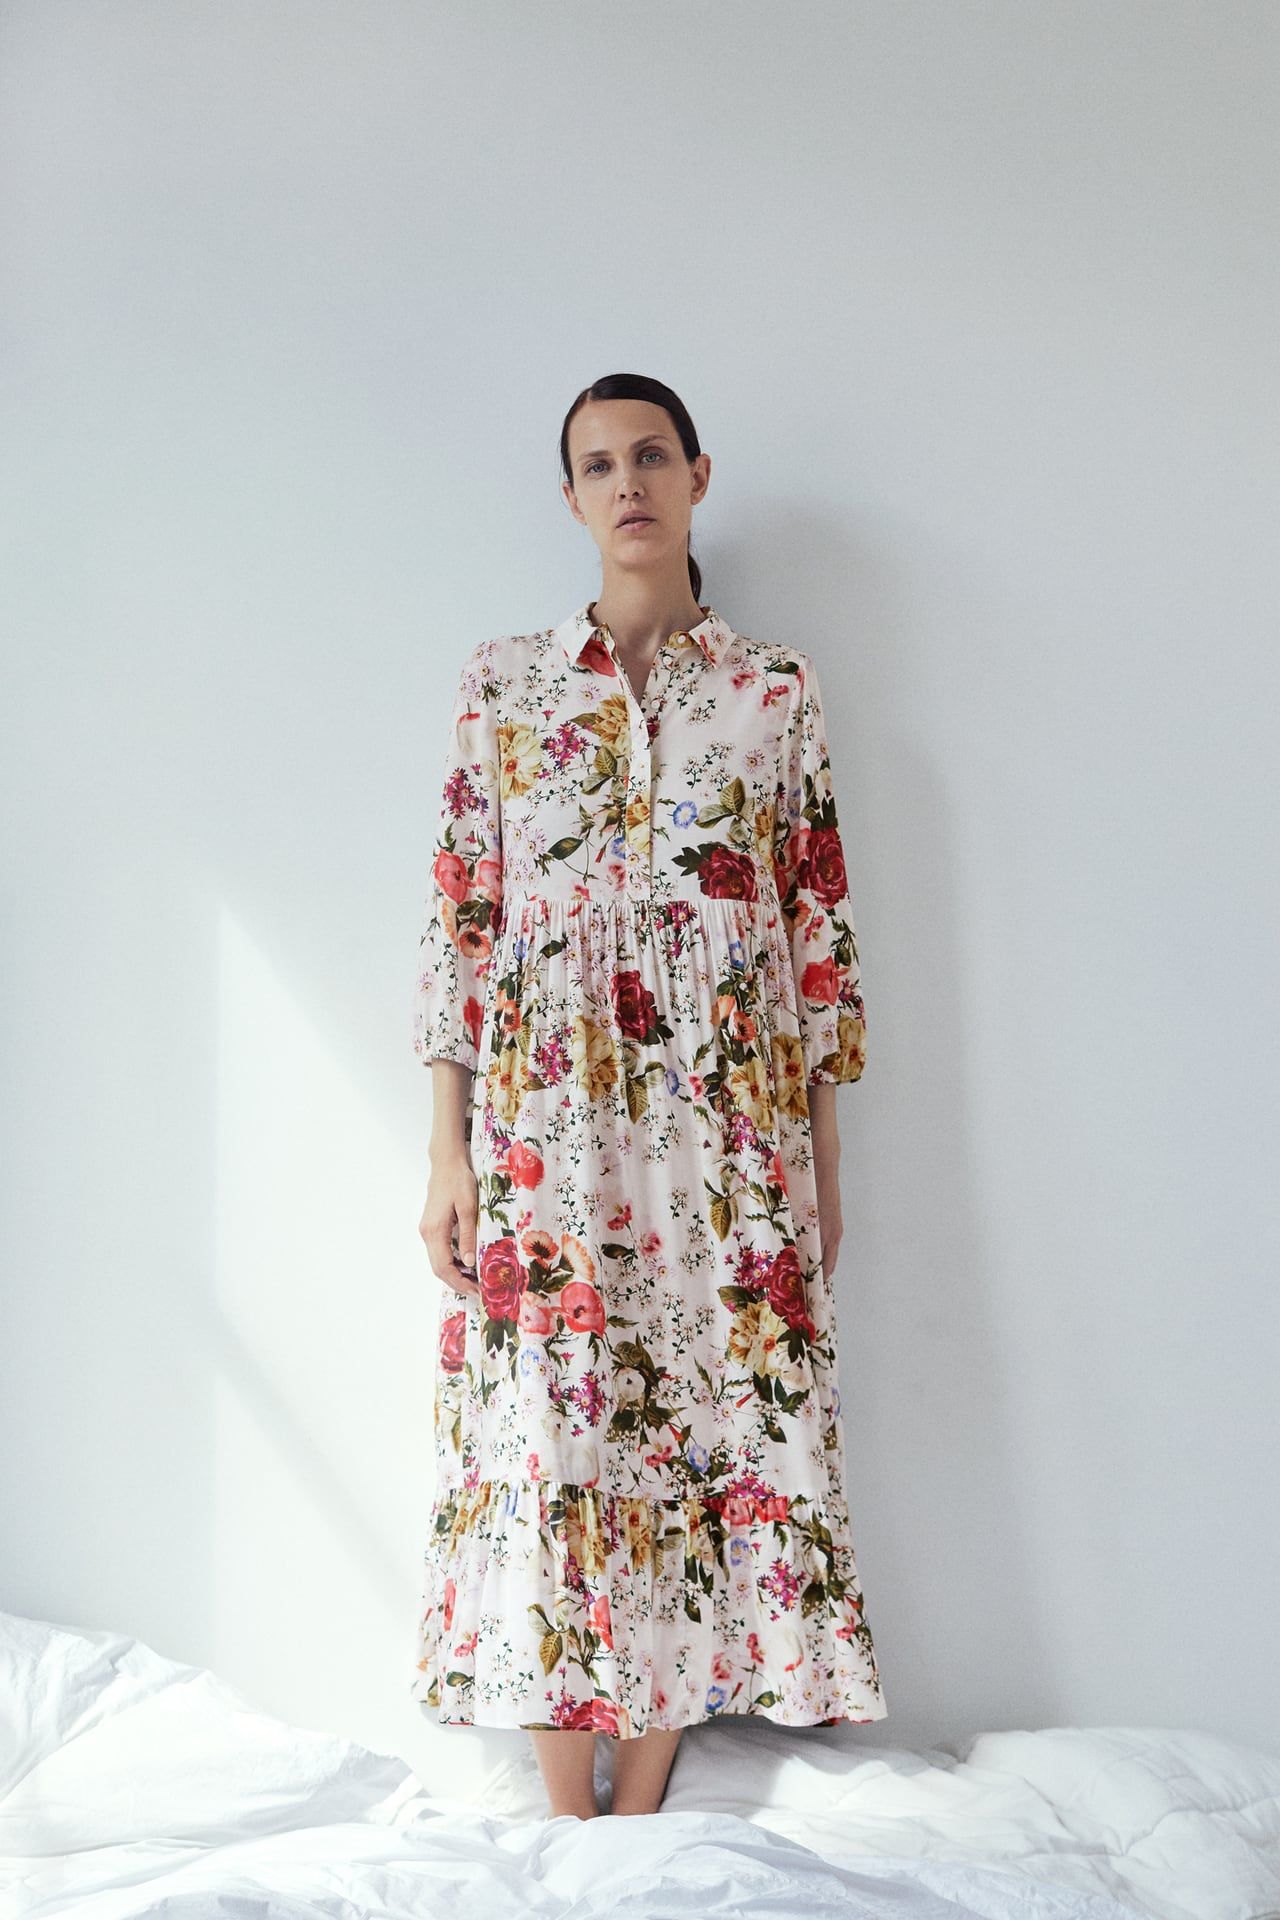 modelo Velocidad supersónica entusiasta Zara:Este vestido largo camisero de flores no llegará a rebajas